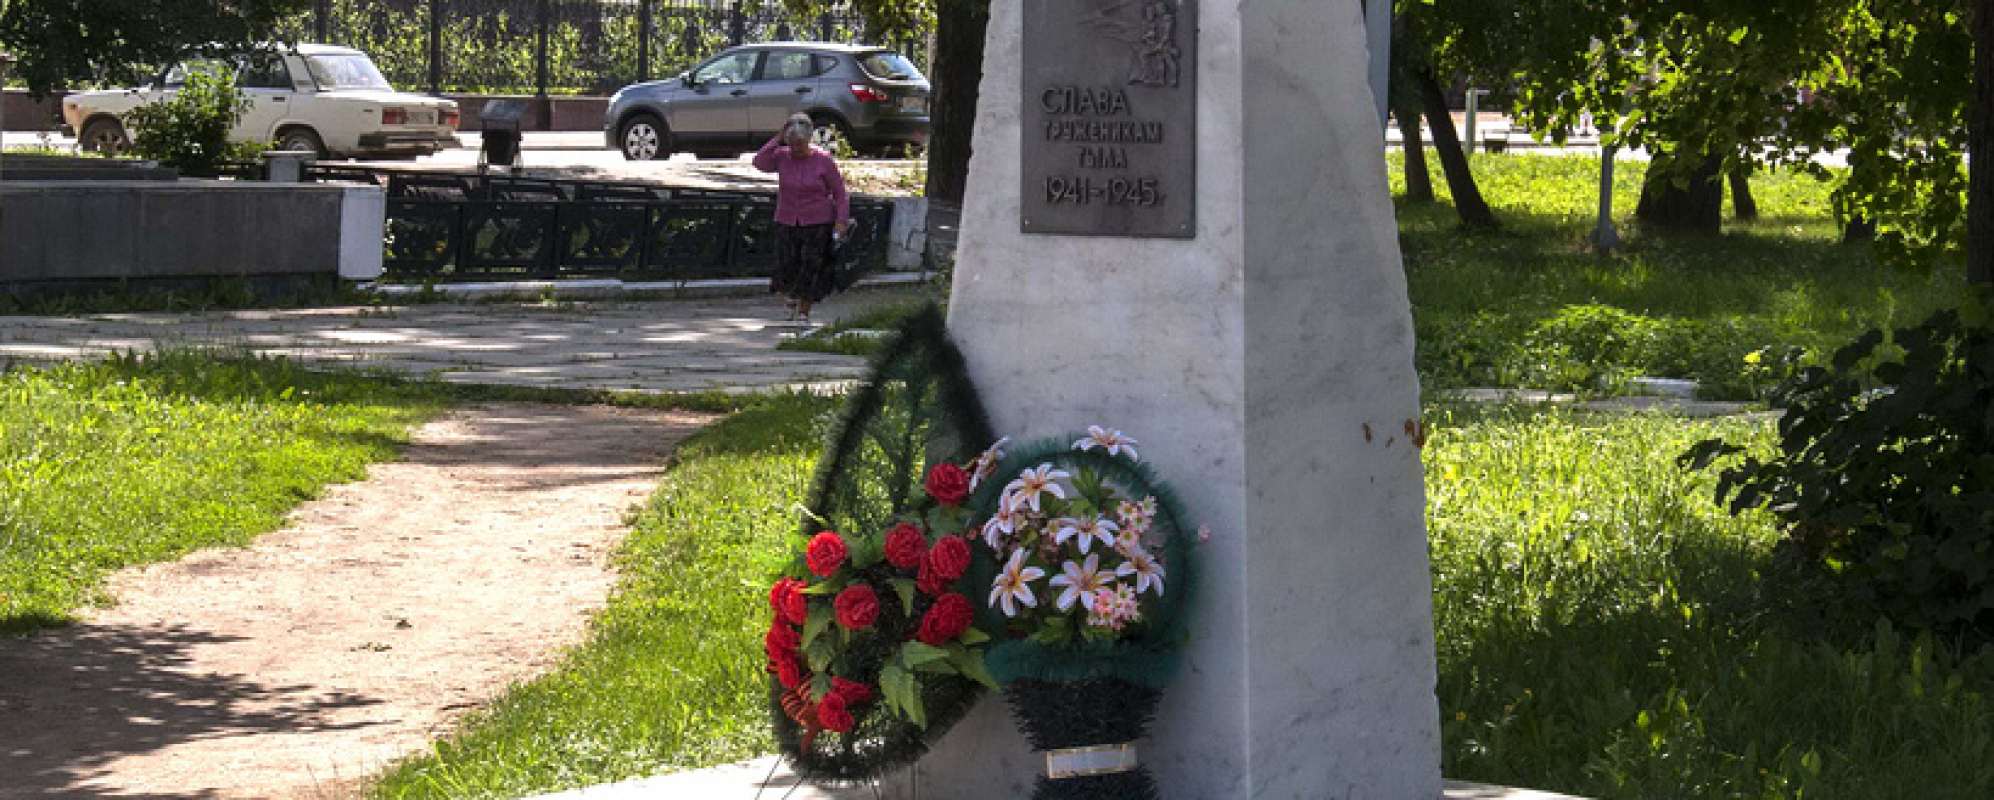 Фотографии памятника Памятник Слава труженикам тыла 1941-1945 годов